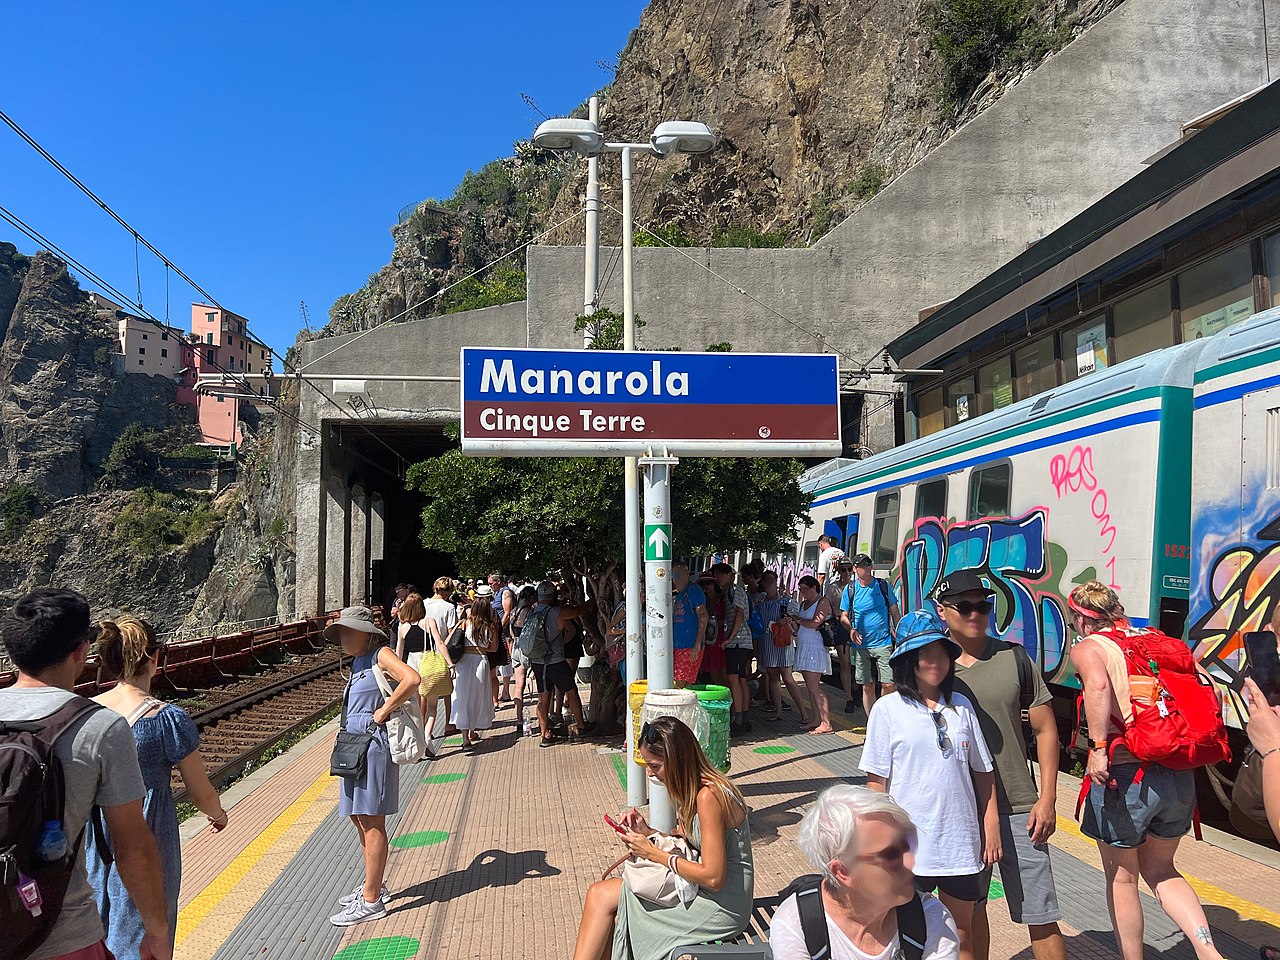 Turisti alla Stazione di Manarola (Cinque Terre). Foto: Wikimedia Commons/Chabe01